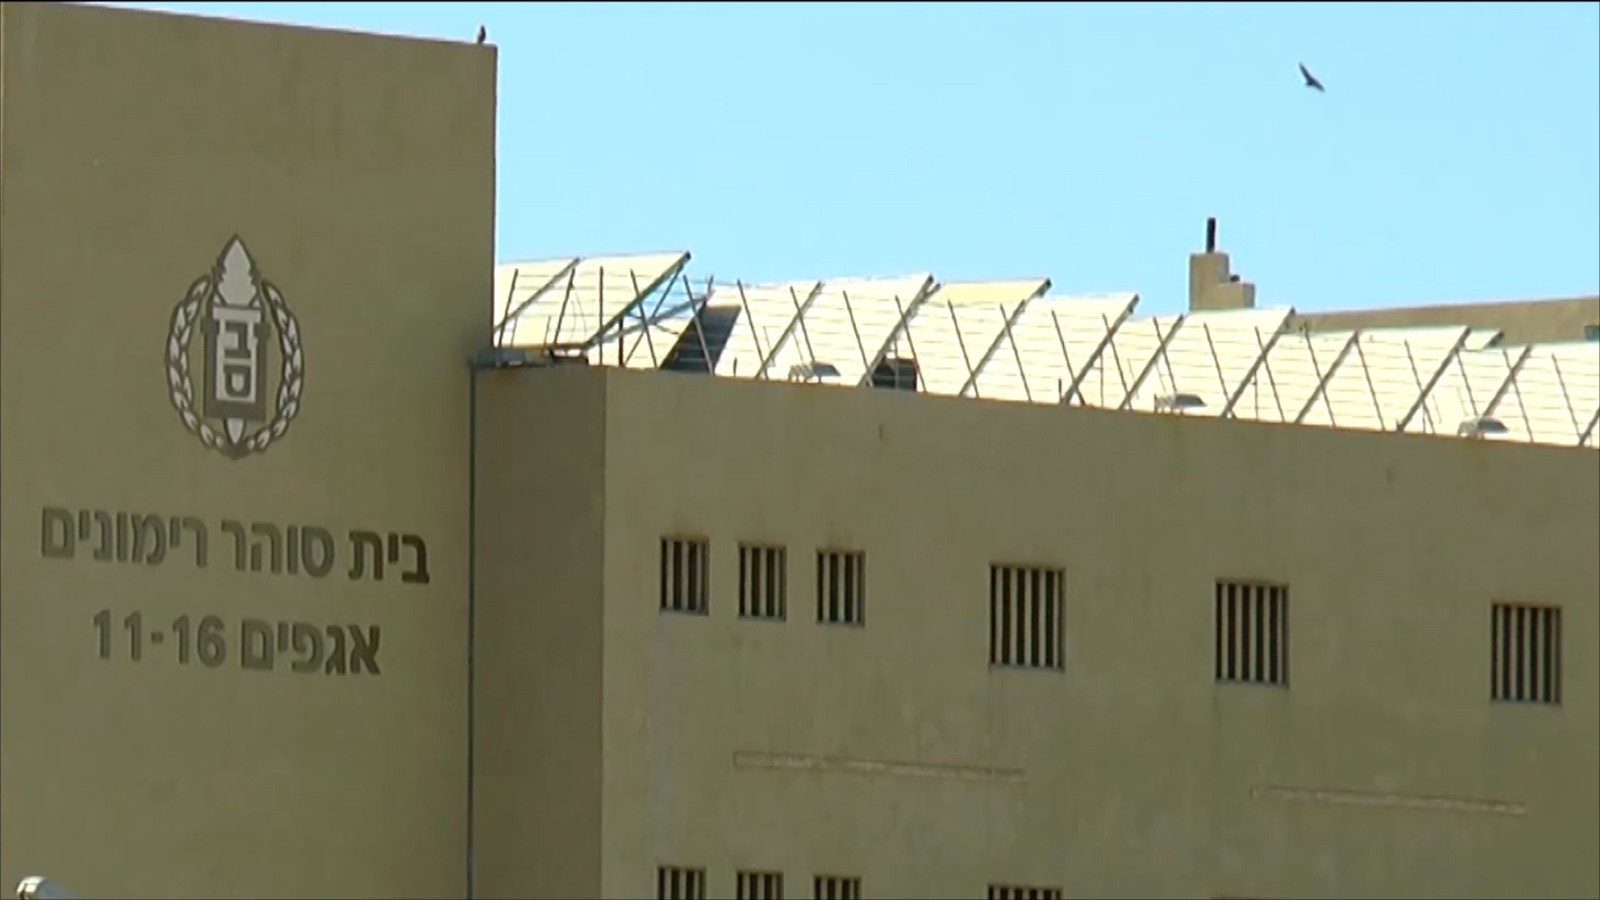 المعتقلون الفلسطينيون يصفون المعاملة التي يتلقونها داخل مركز عتصيون بالمذلةالجزيرة)